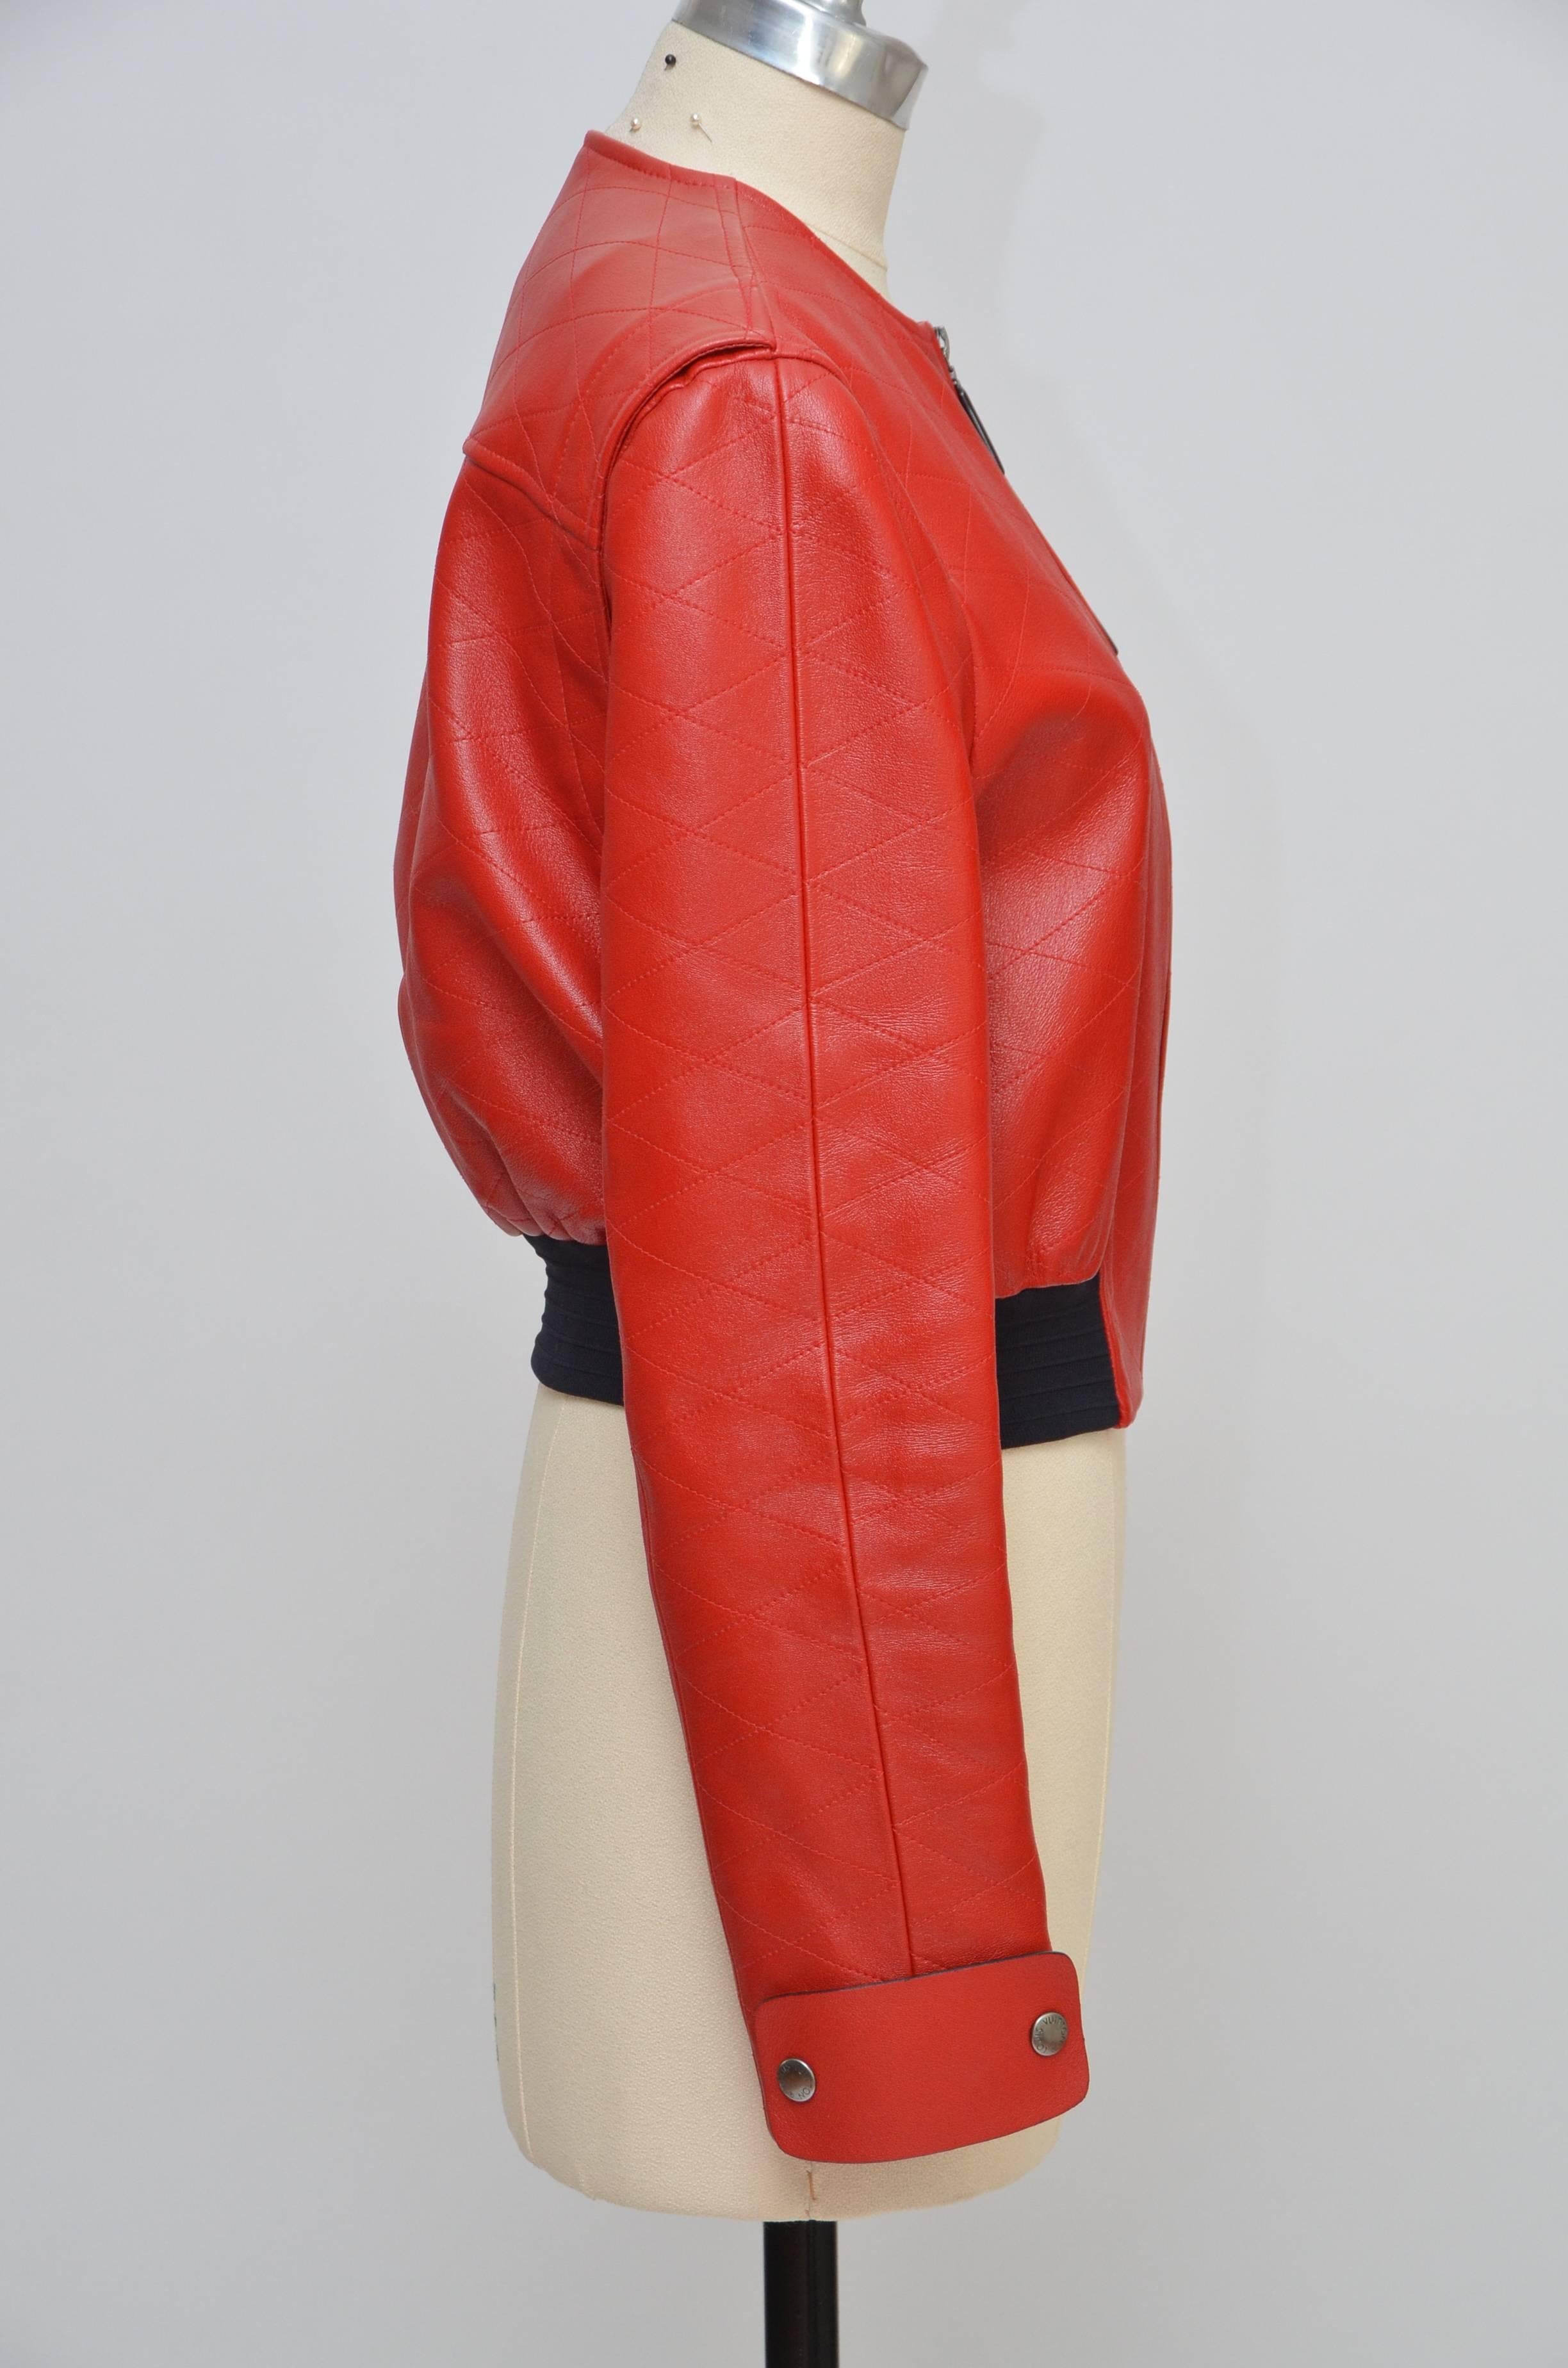 Louis Vuitton Resort 2015 rote Lederjacke. 

Nicki Minaj hatte gestern (7. Juni) einen Gastauftritt während des Auftritts von Meek Mill beim Hot 97 Summer Jam 2015 und trug eine rote Louis Vuitton-Lederjacke aus der Resort 2015-Kollektion des